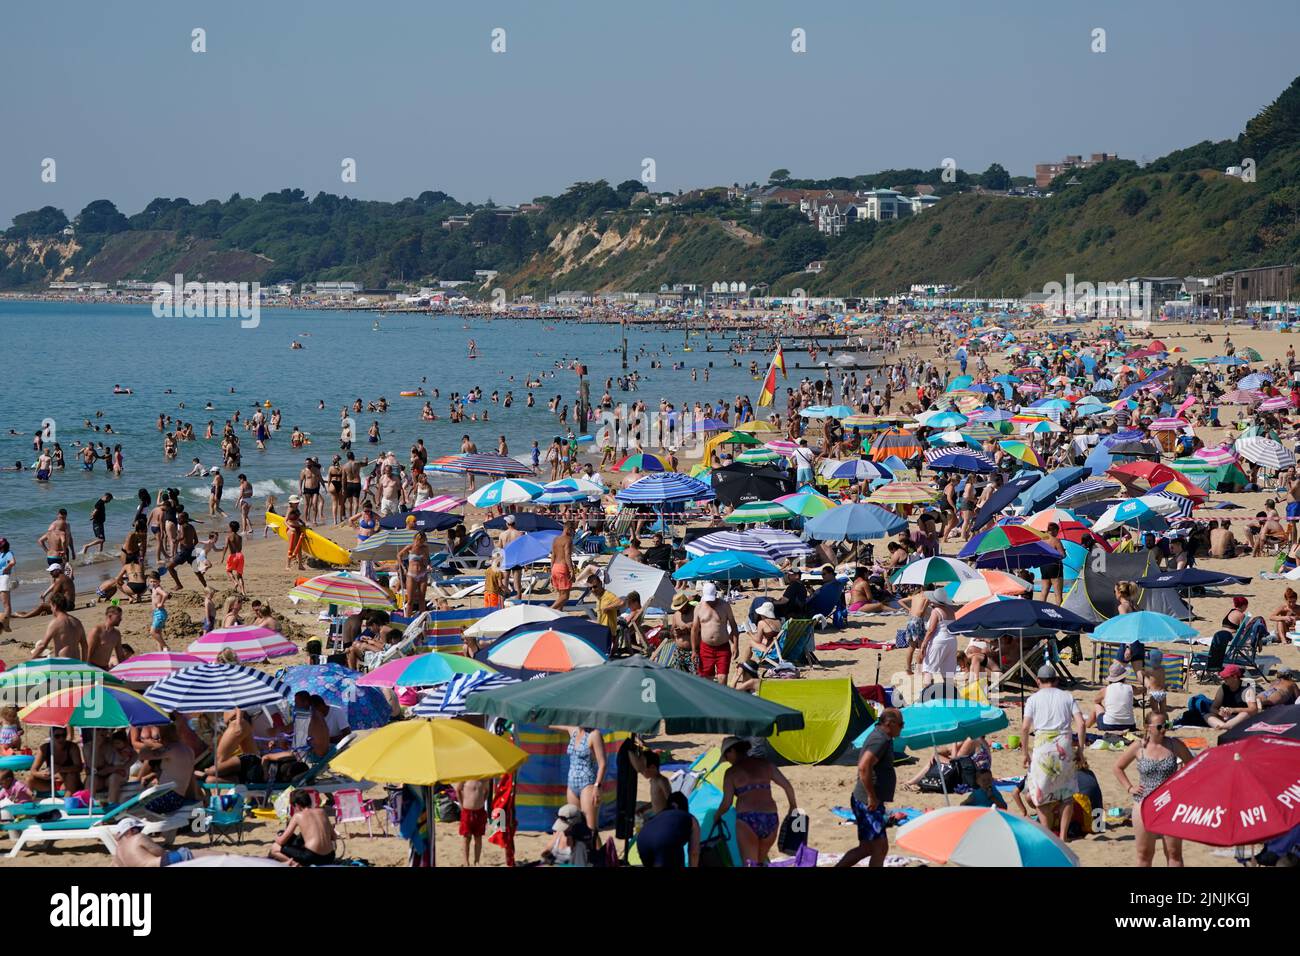 La gente se reúne en el clima caluroso de la playa de Bournemouth, Dorset. Está previsto que se declare una sequía en algunas partes de Inglaterra el viernes, con temperaturas que alcanzarán los 35C grados, lo que hace que el país sea más caliente que algunas partes del Caribe. Fecha de la foto: Viernes 12 de agosto de 2022. Foto de stock